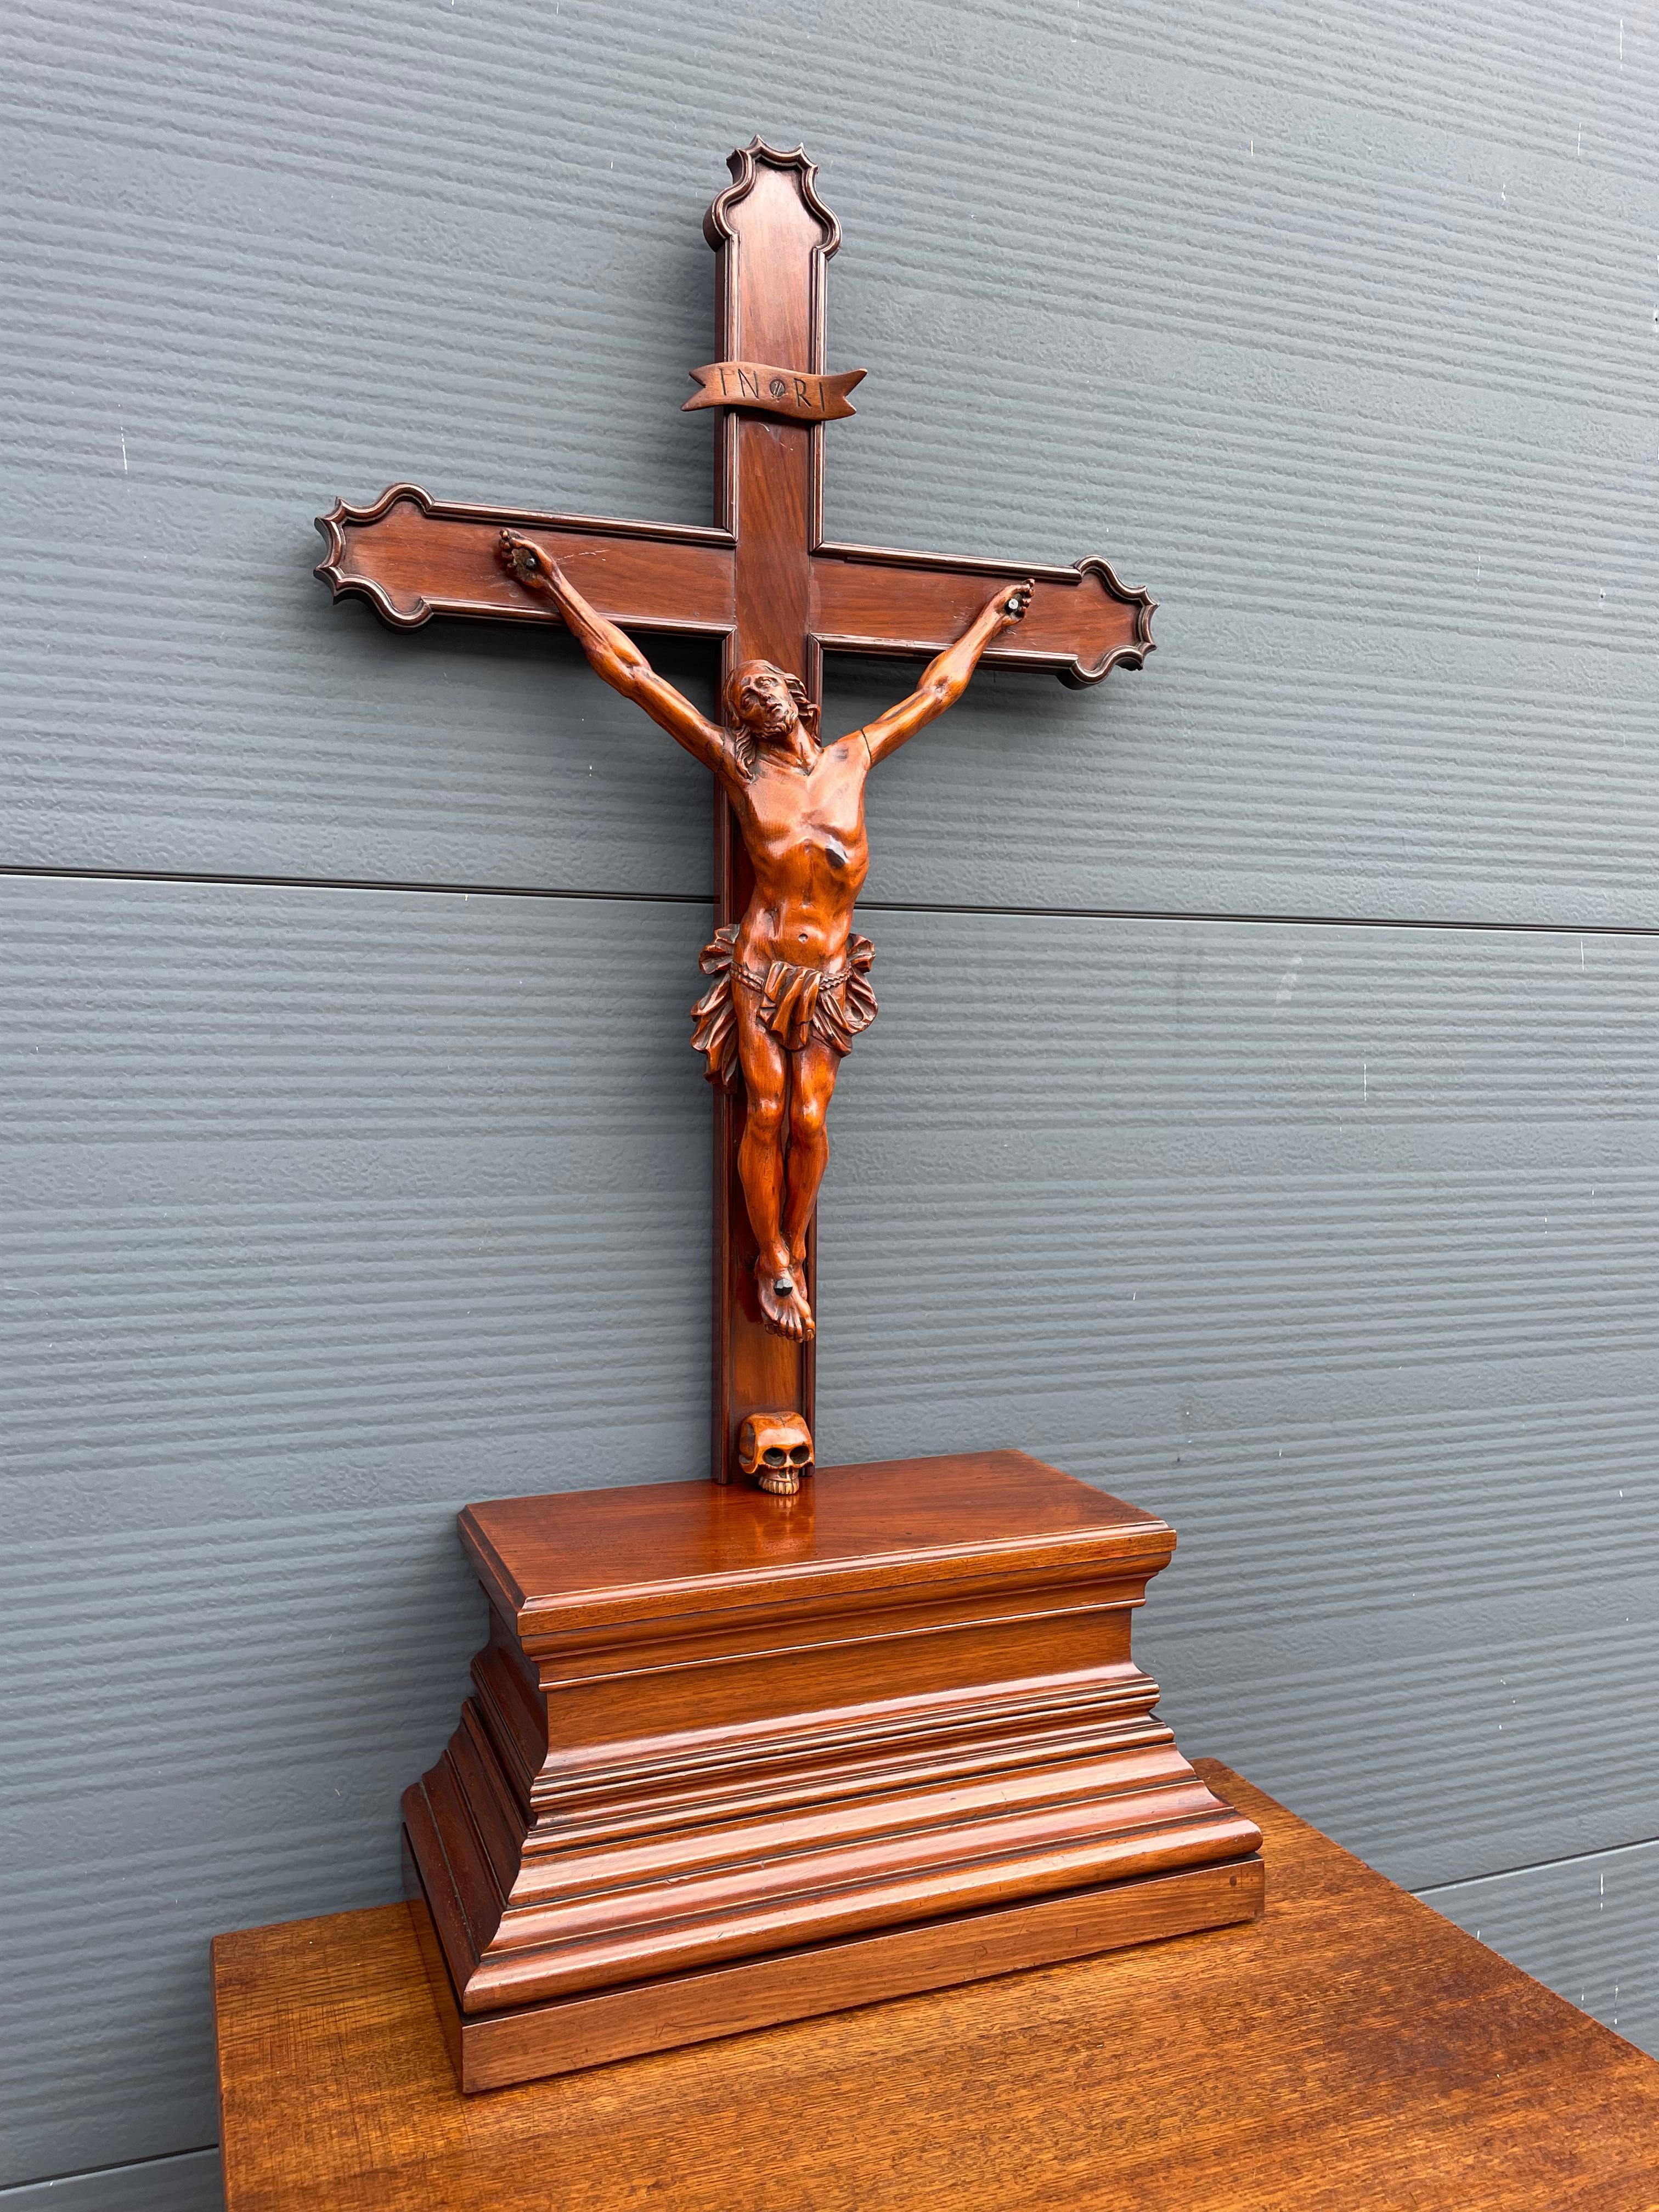 Superbe crucifix d'autel du 19e siècle avec un compartiment secret pour la bible dans la base.

Au fil des décennies, nous avons vendu un certain nombre de crucifix uniques et très bien réalisés, mais jamais un crucifix avec une patine aussi